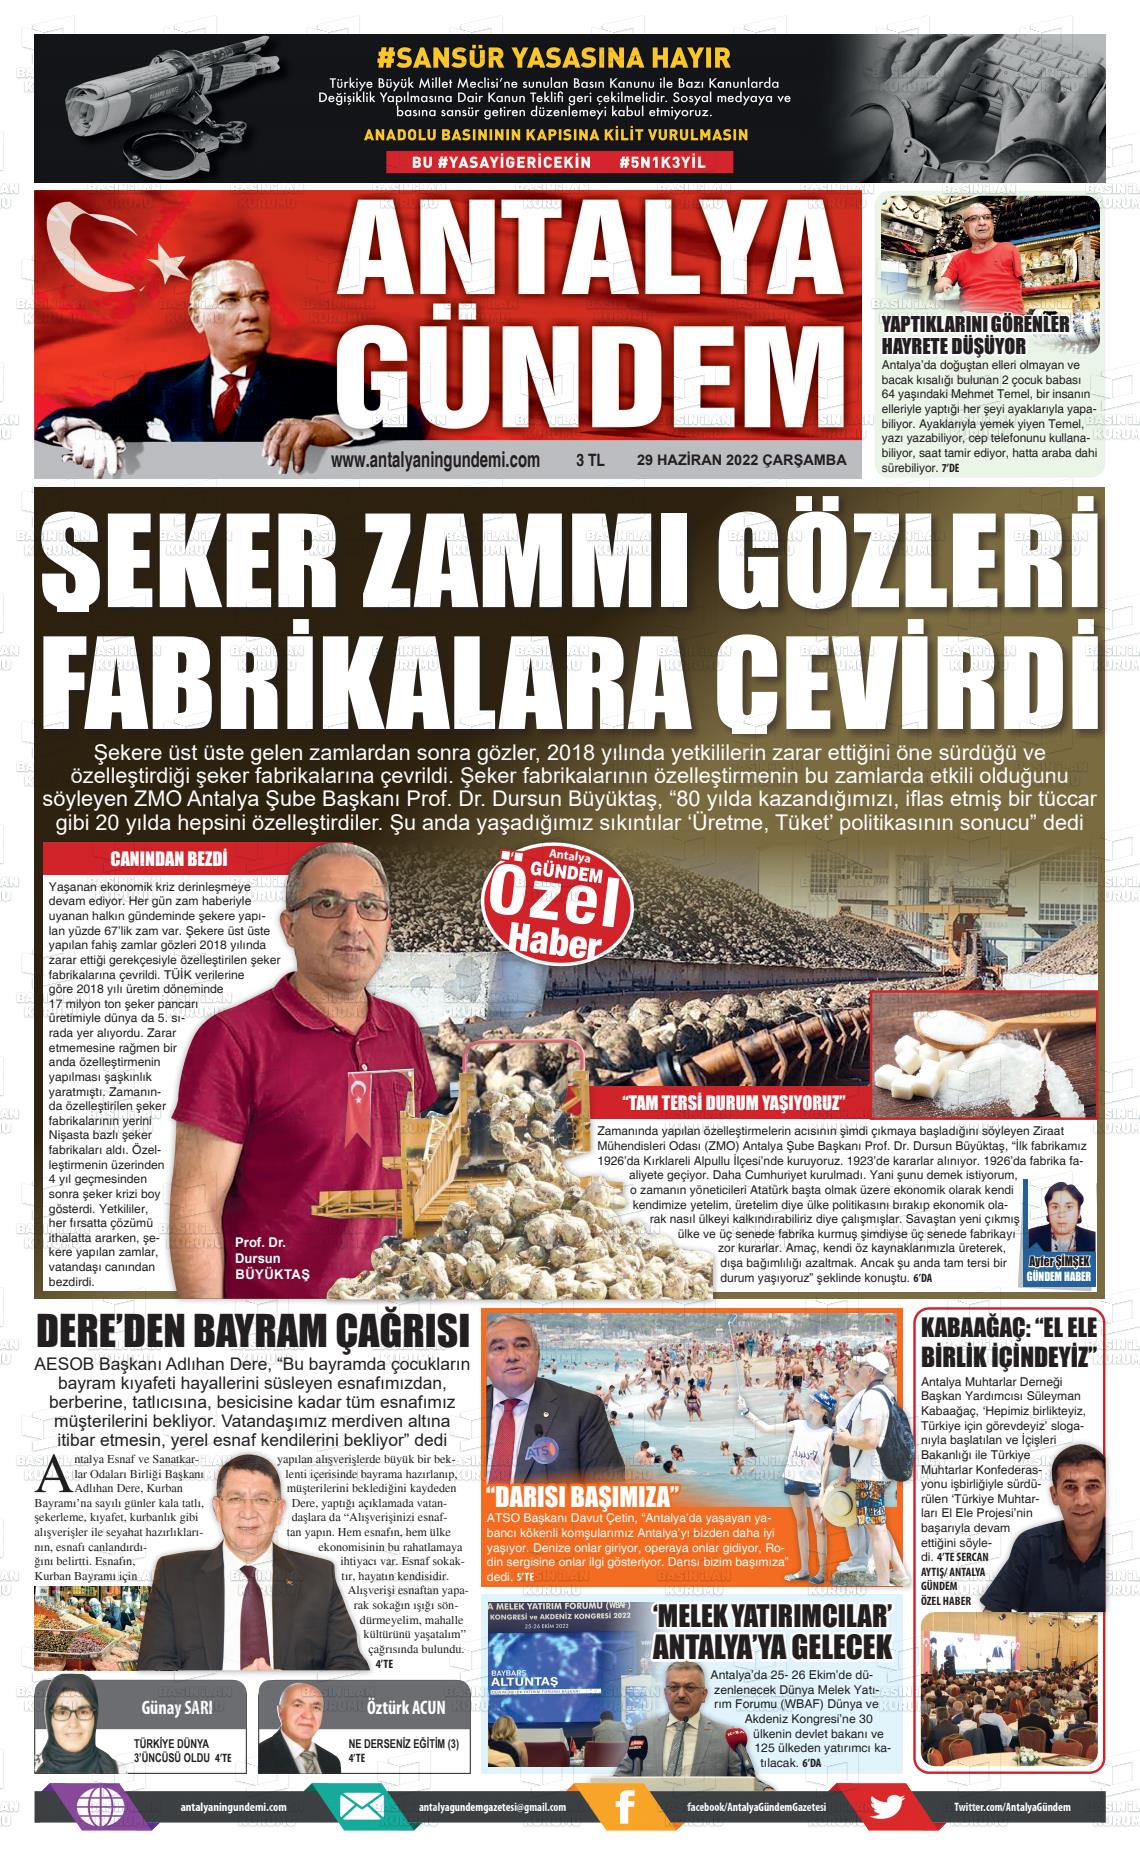 29 Haziran 2022 Antalya'nın Gündemi Gazete Manşeti